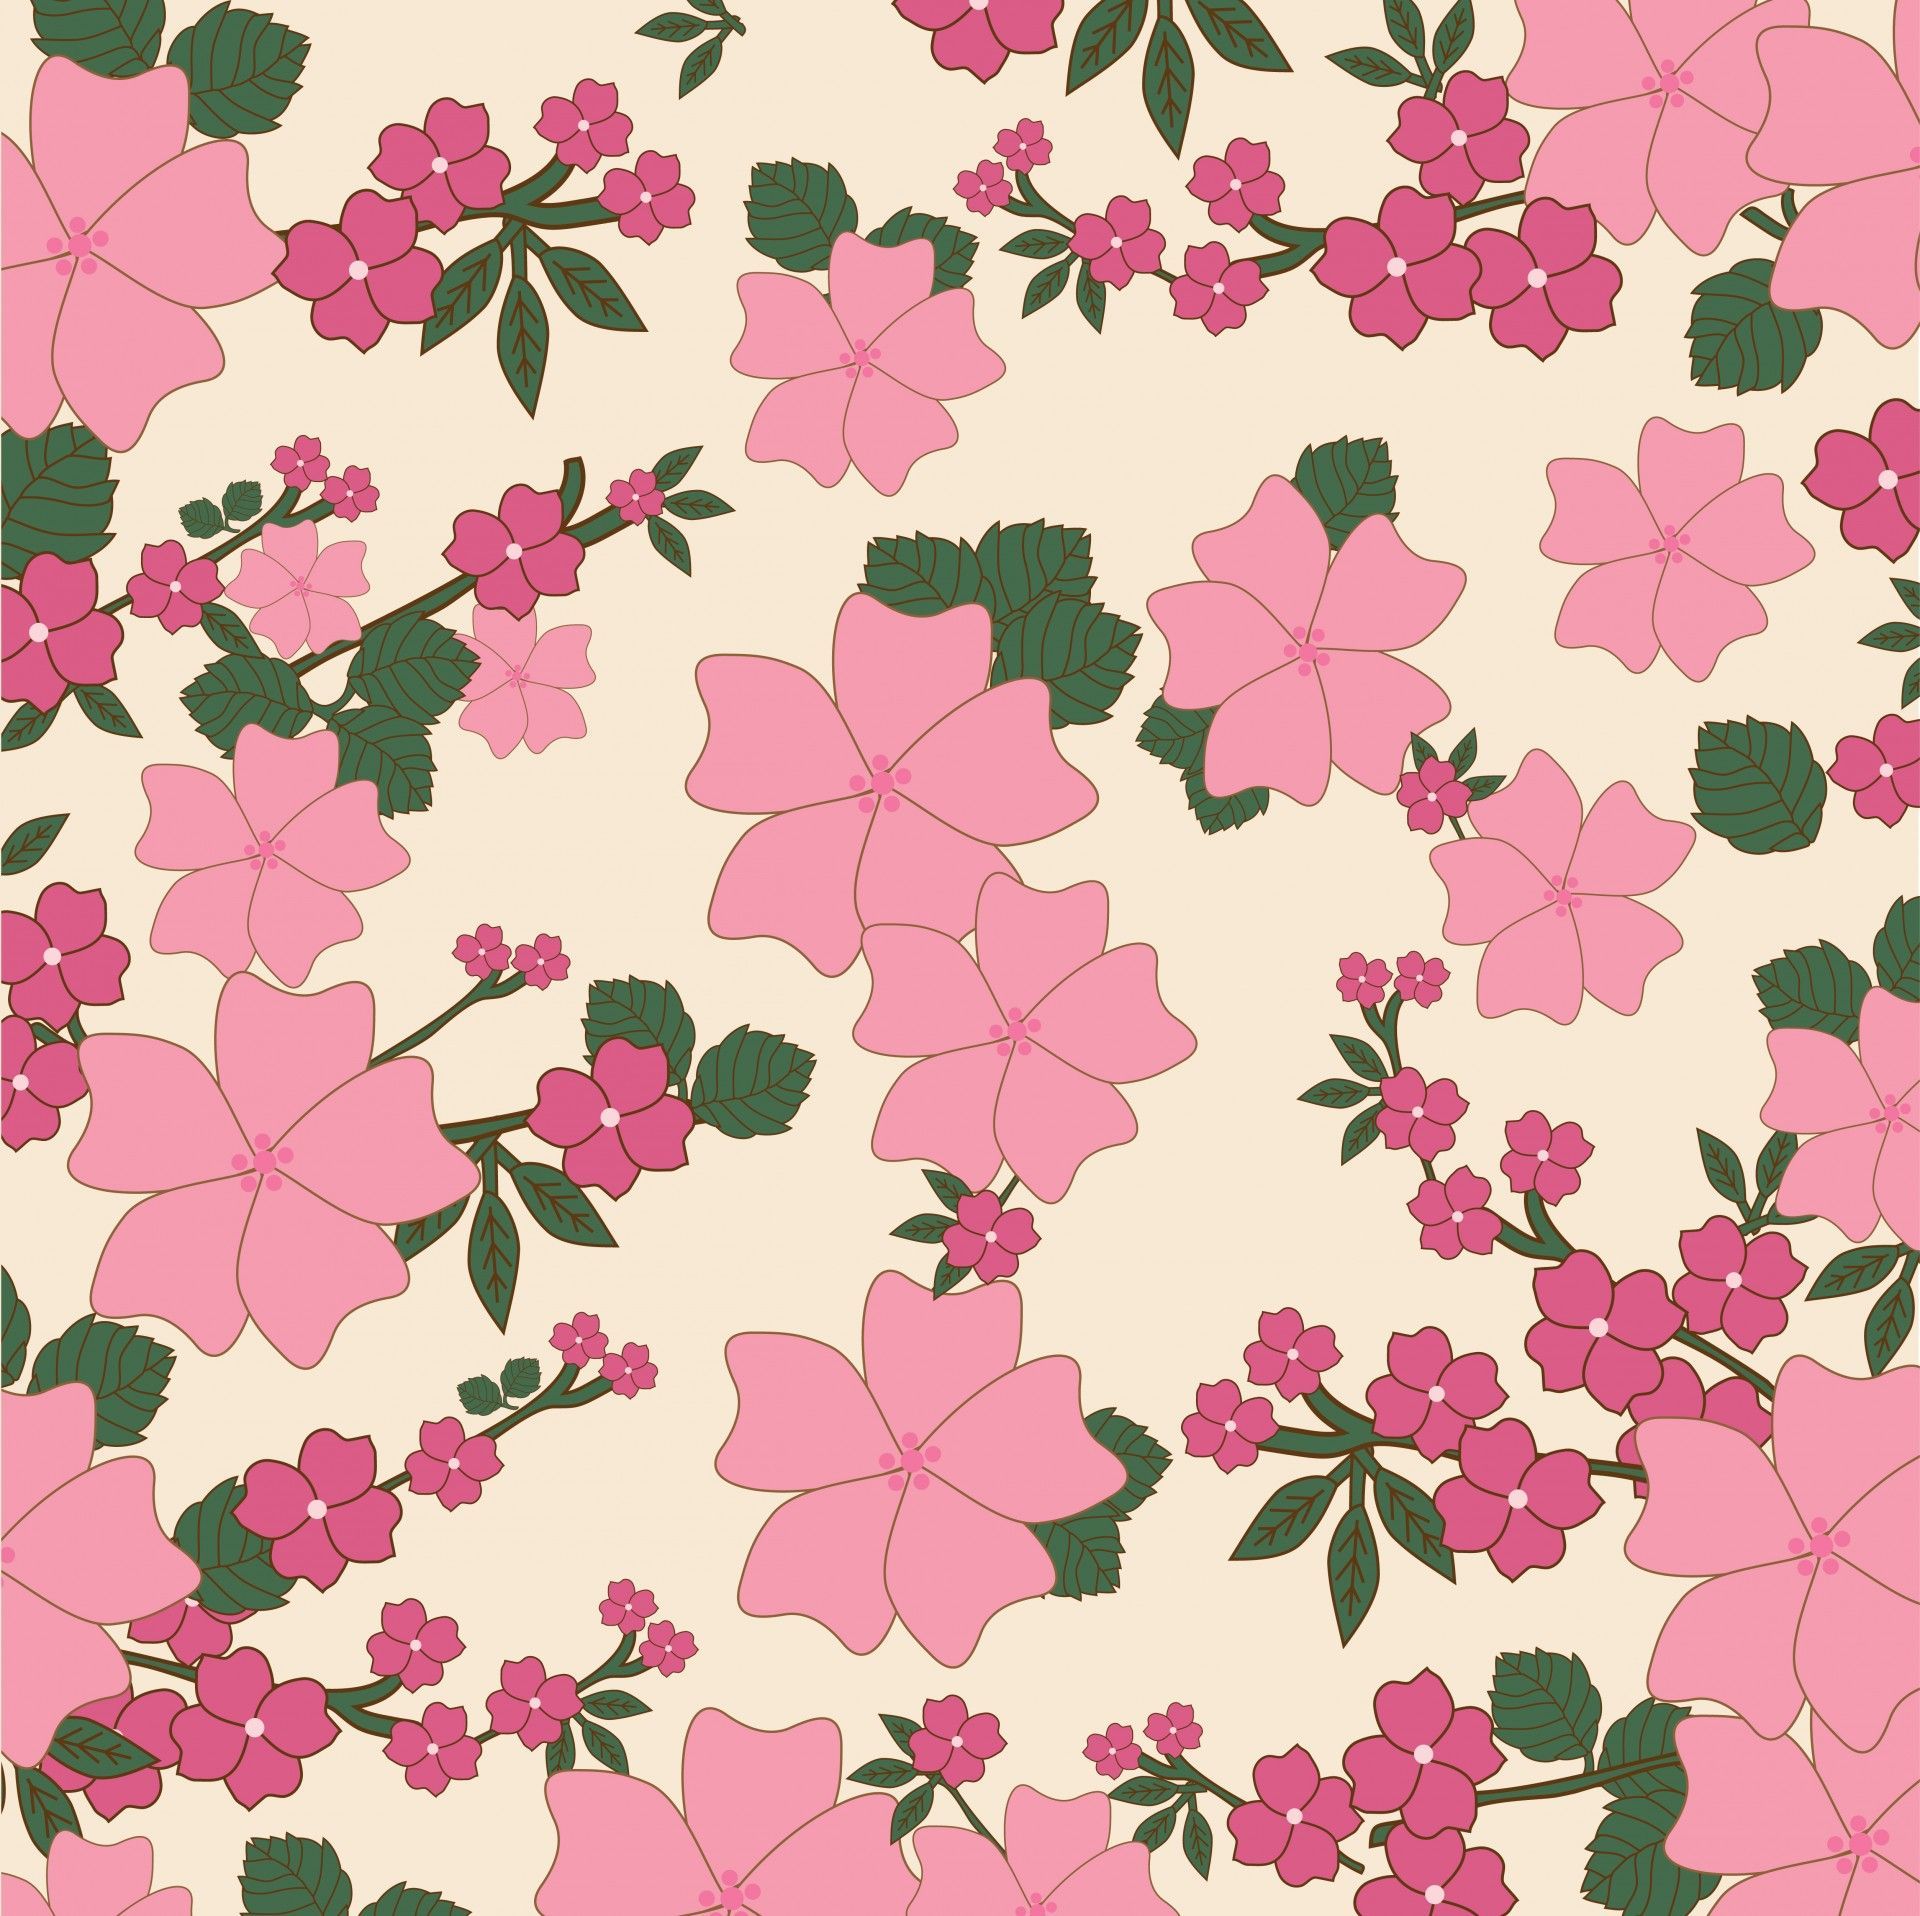 Indie Floral Wallpaper Free Indie Floral Background